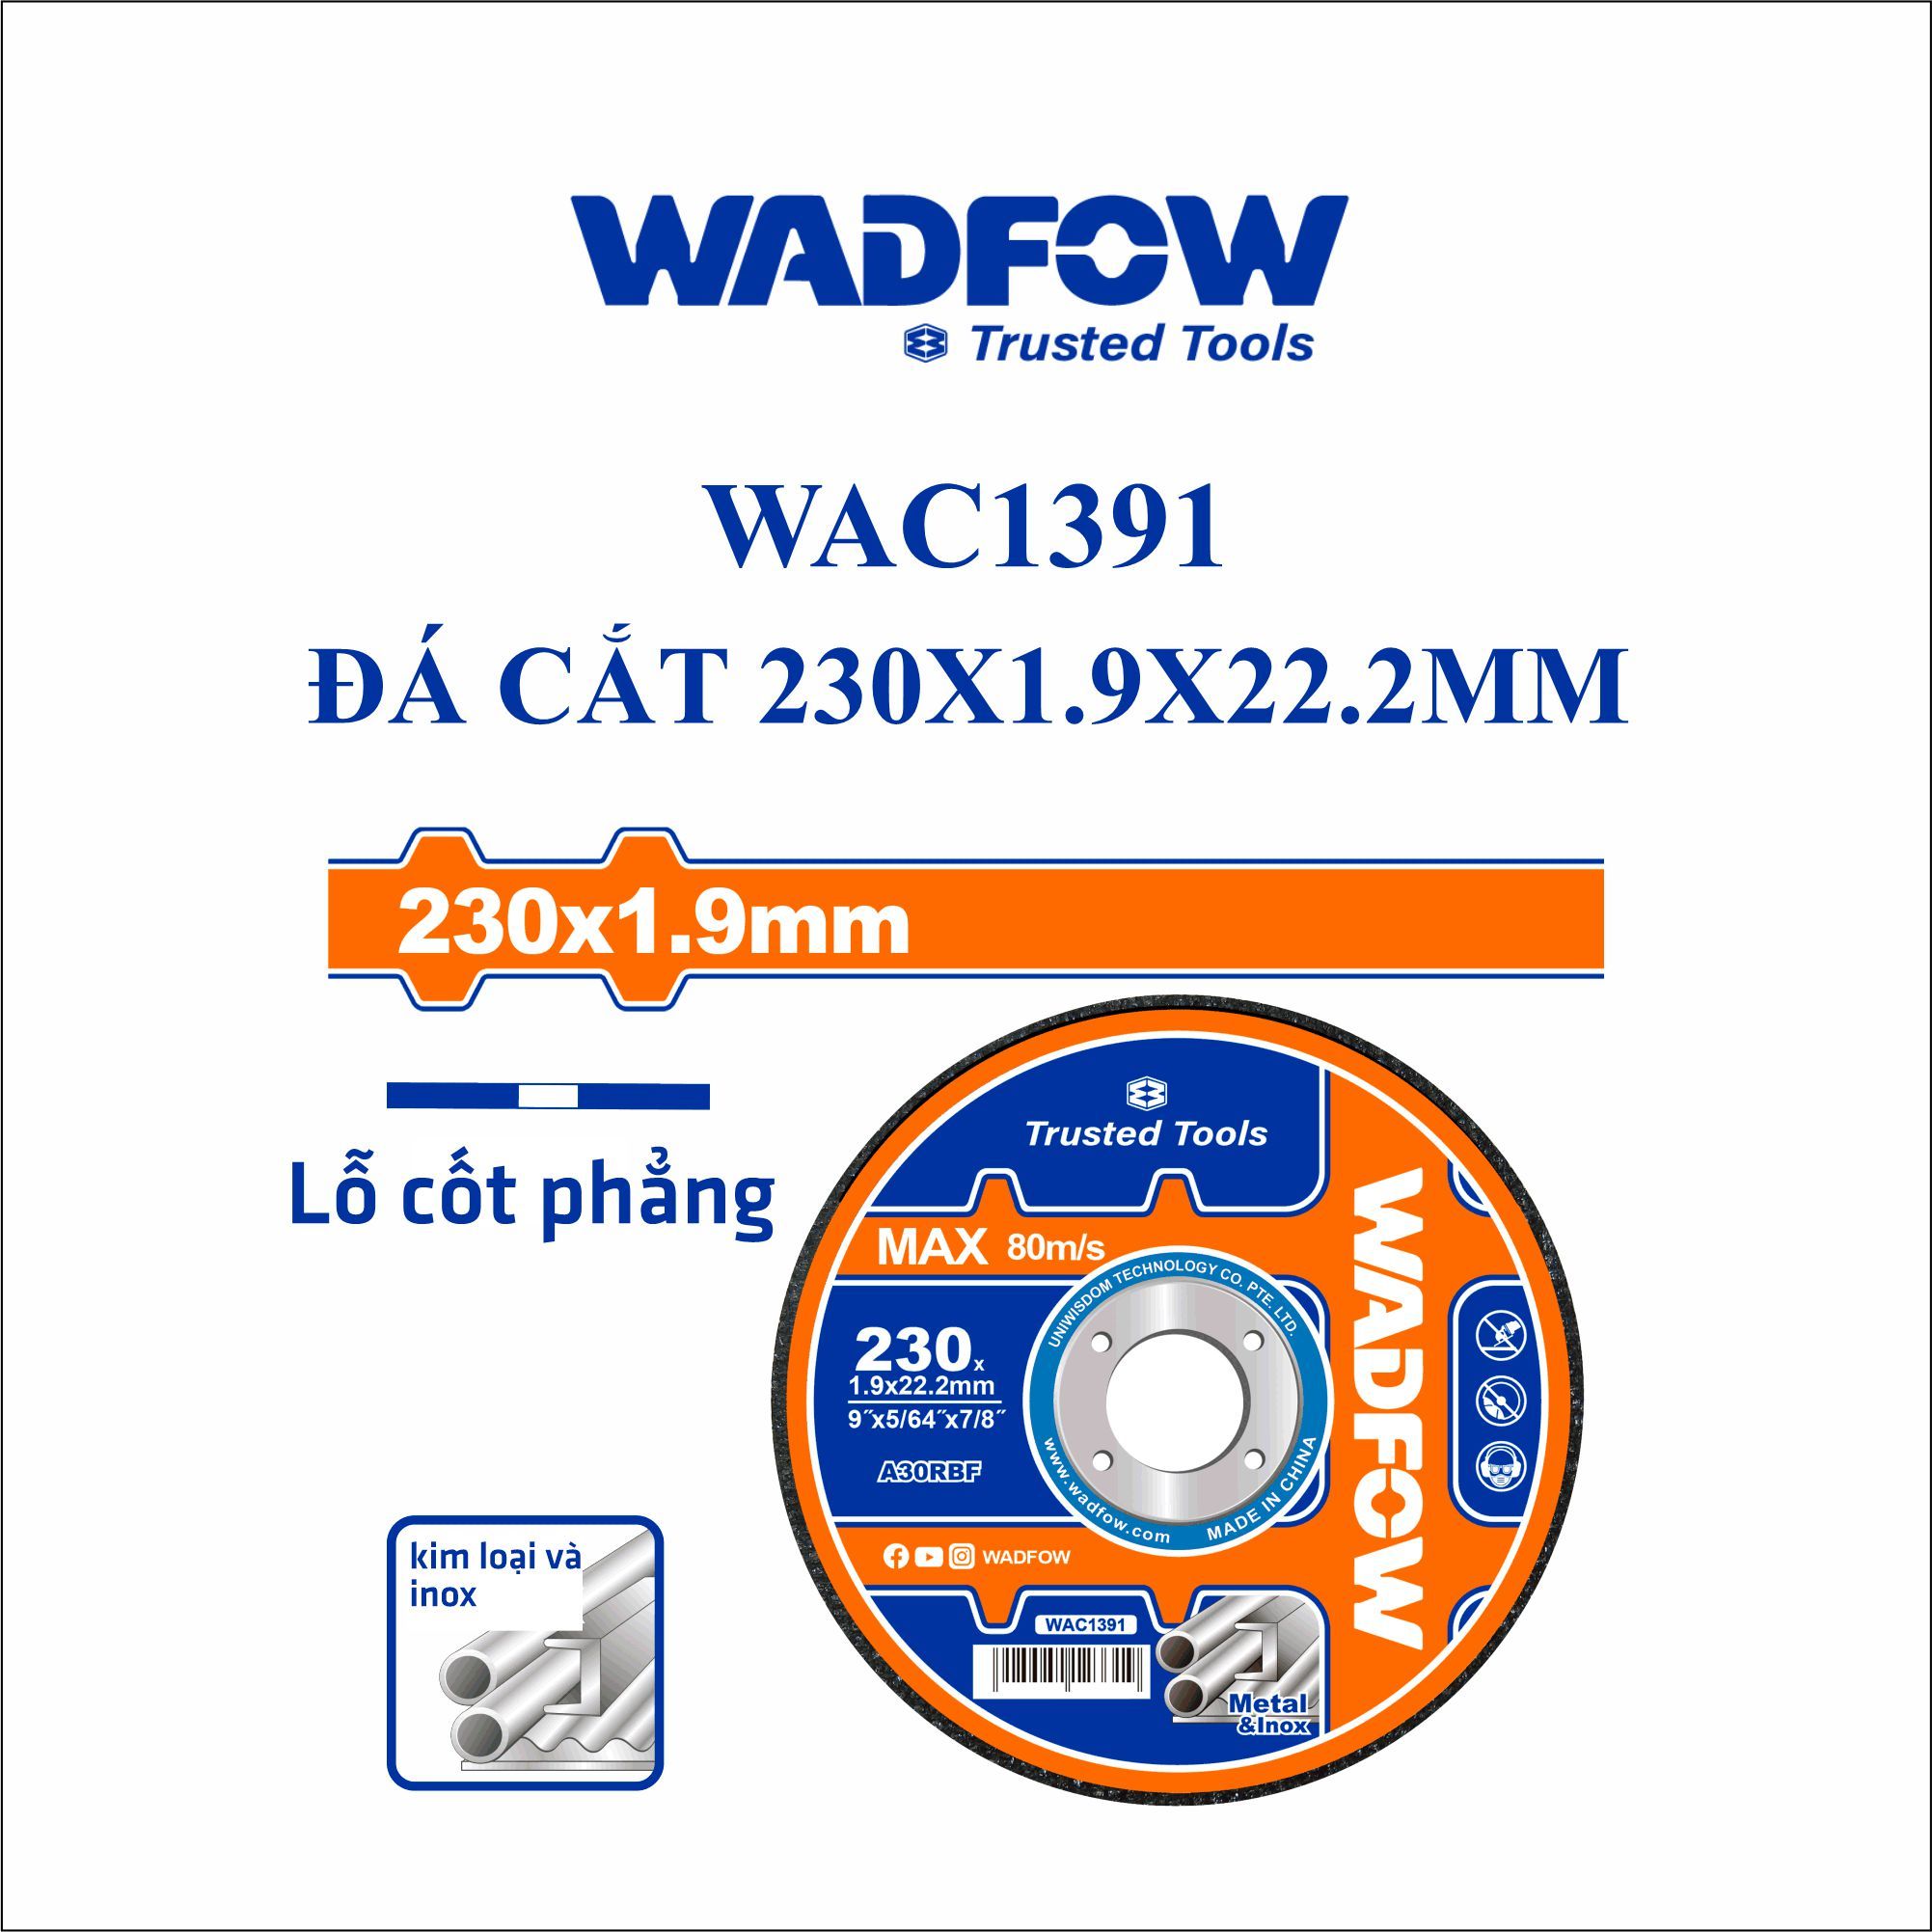  Đá cắt kim loại 230x1.9x22.2mm WADFOW WAC1391 